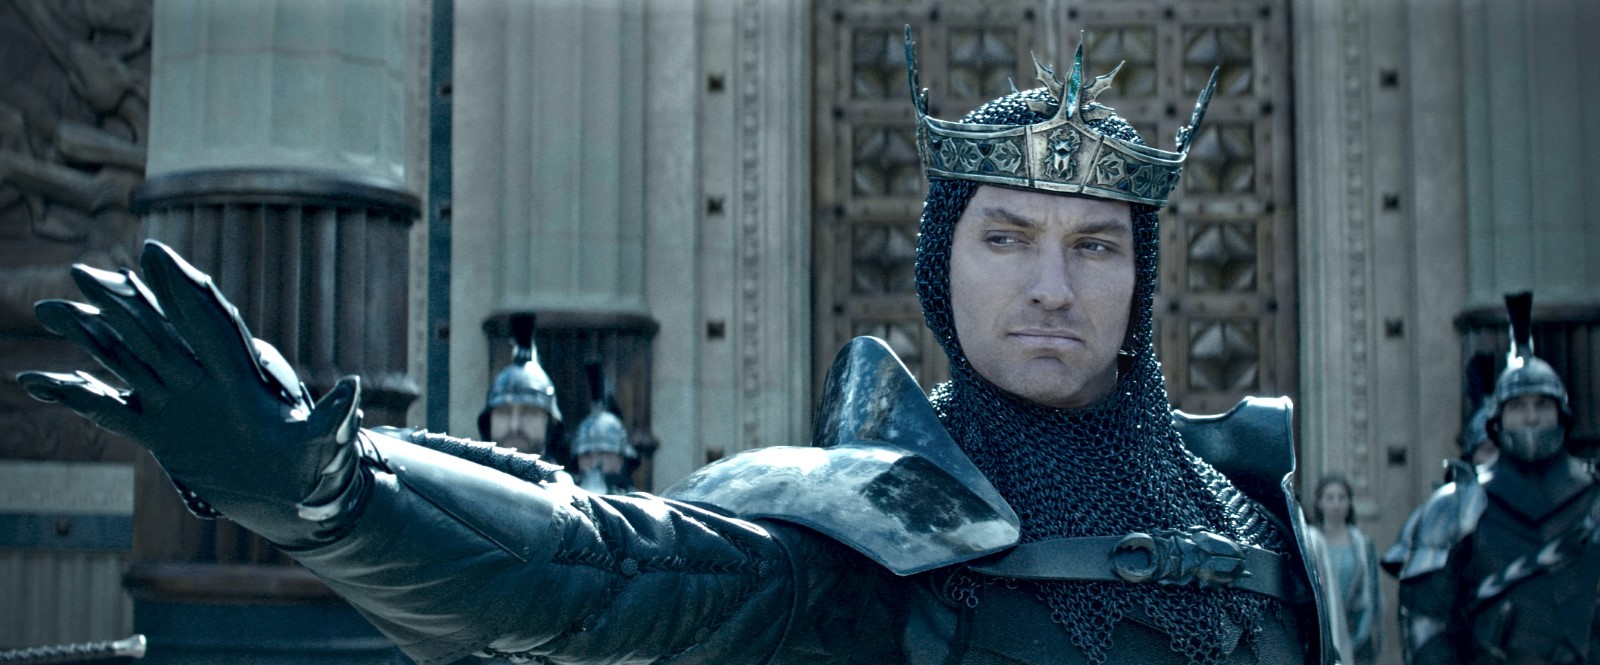 Watch Online Hd King Arthur: Legend Of The Sword